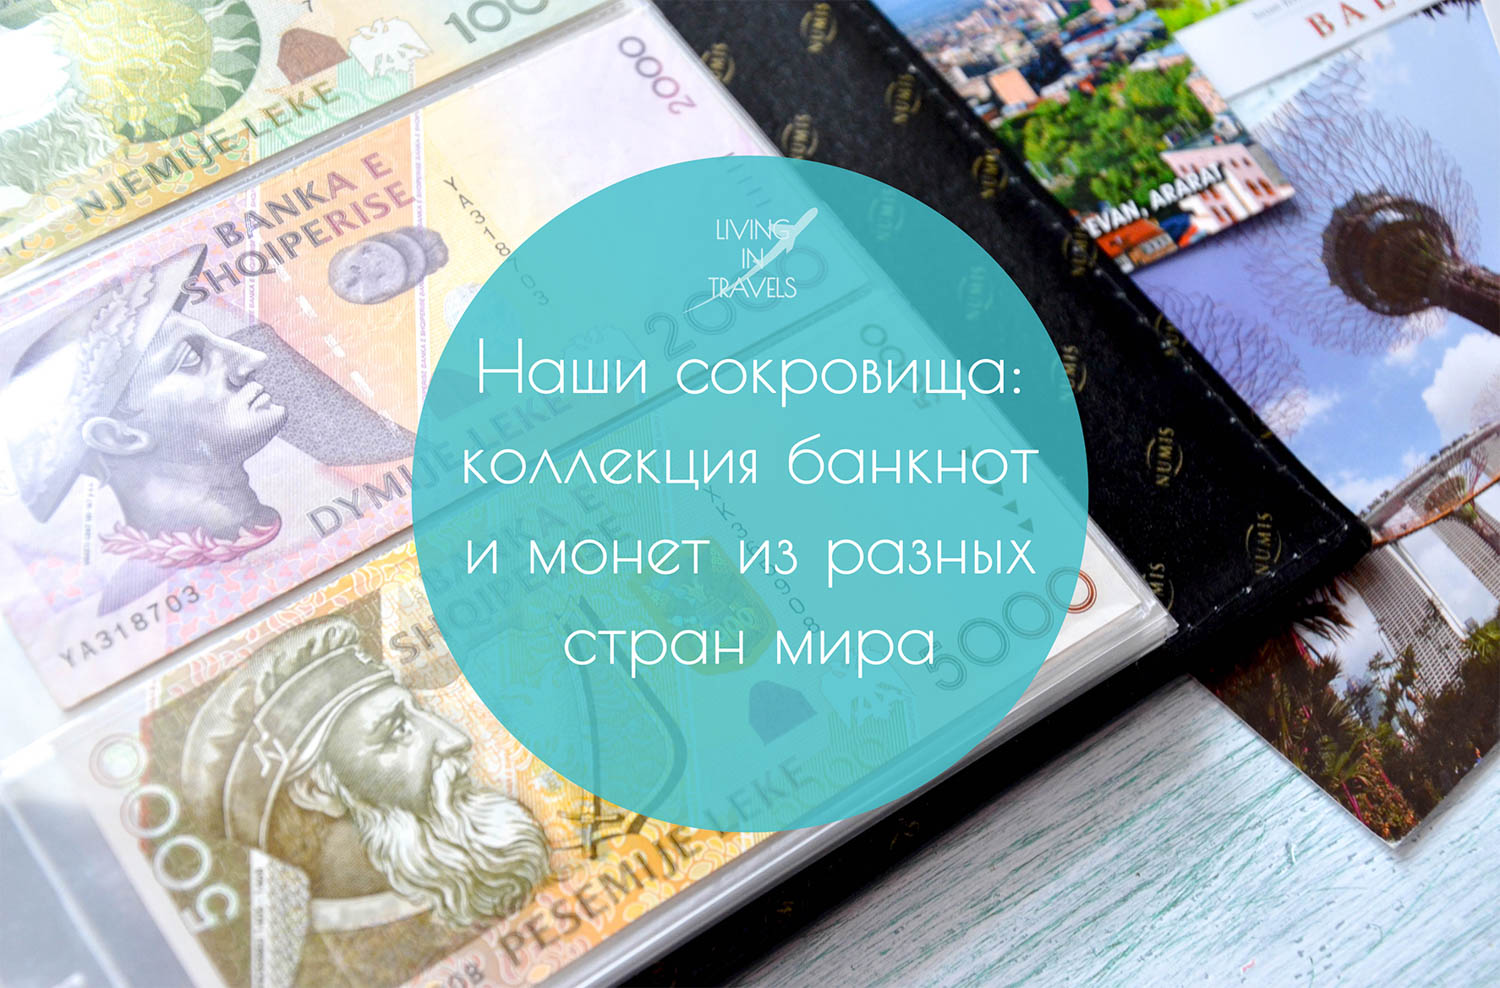 Сокровища путешественников: коллекция банкнот и монет из разных стран мира